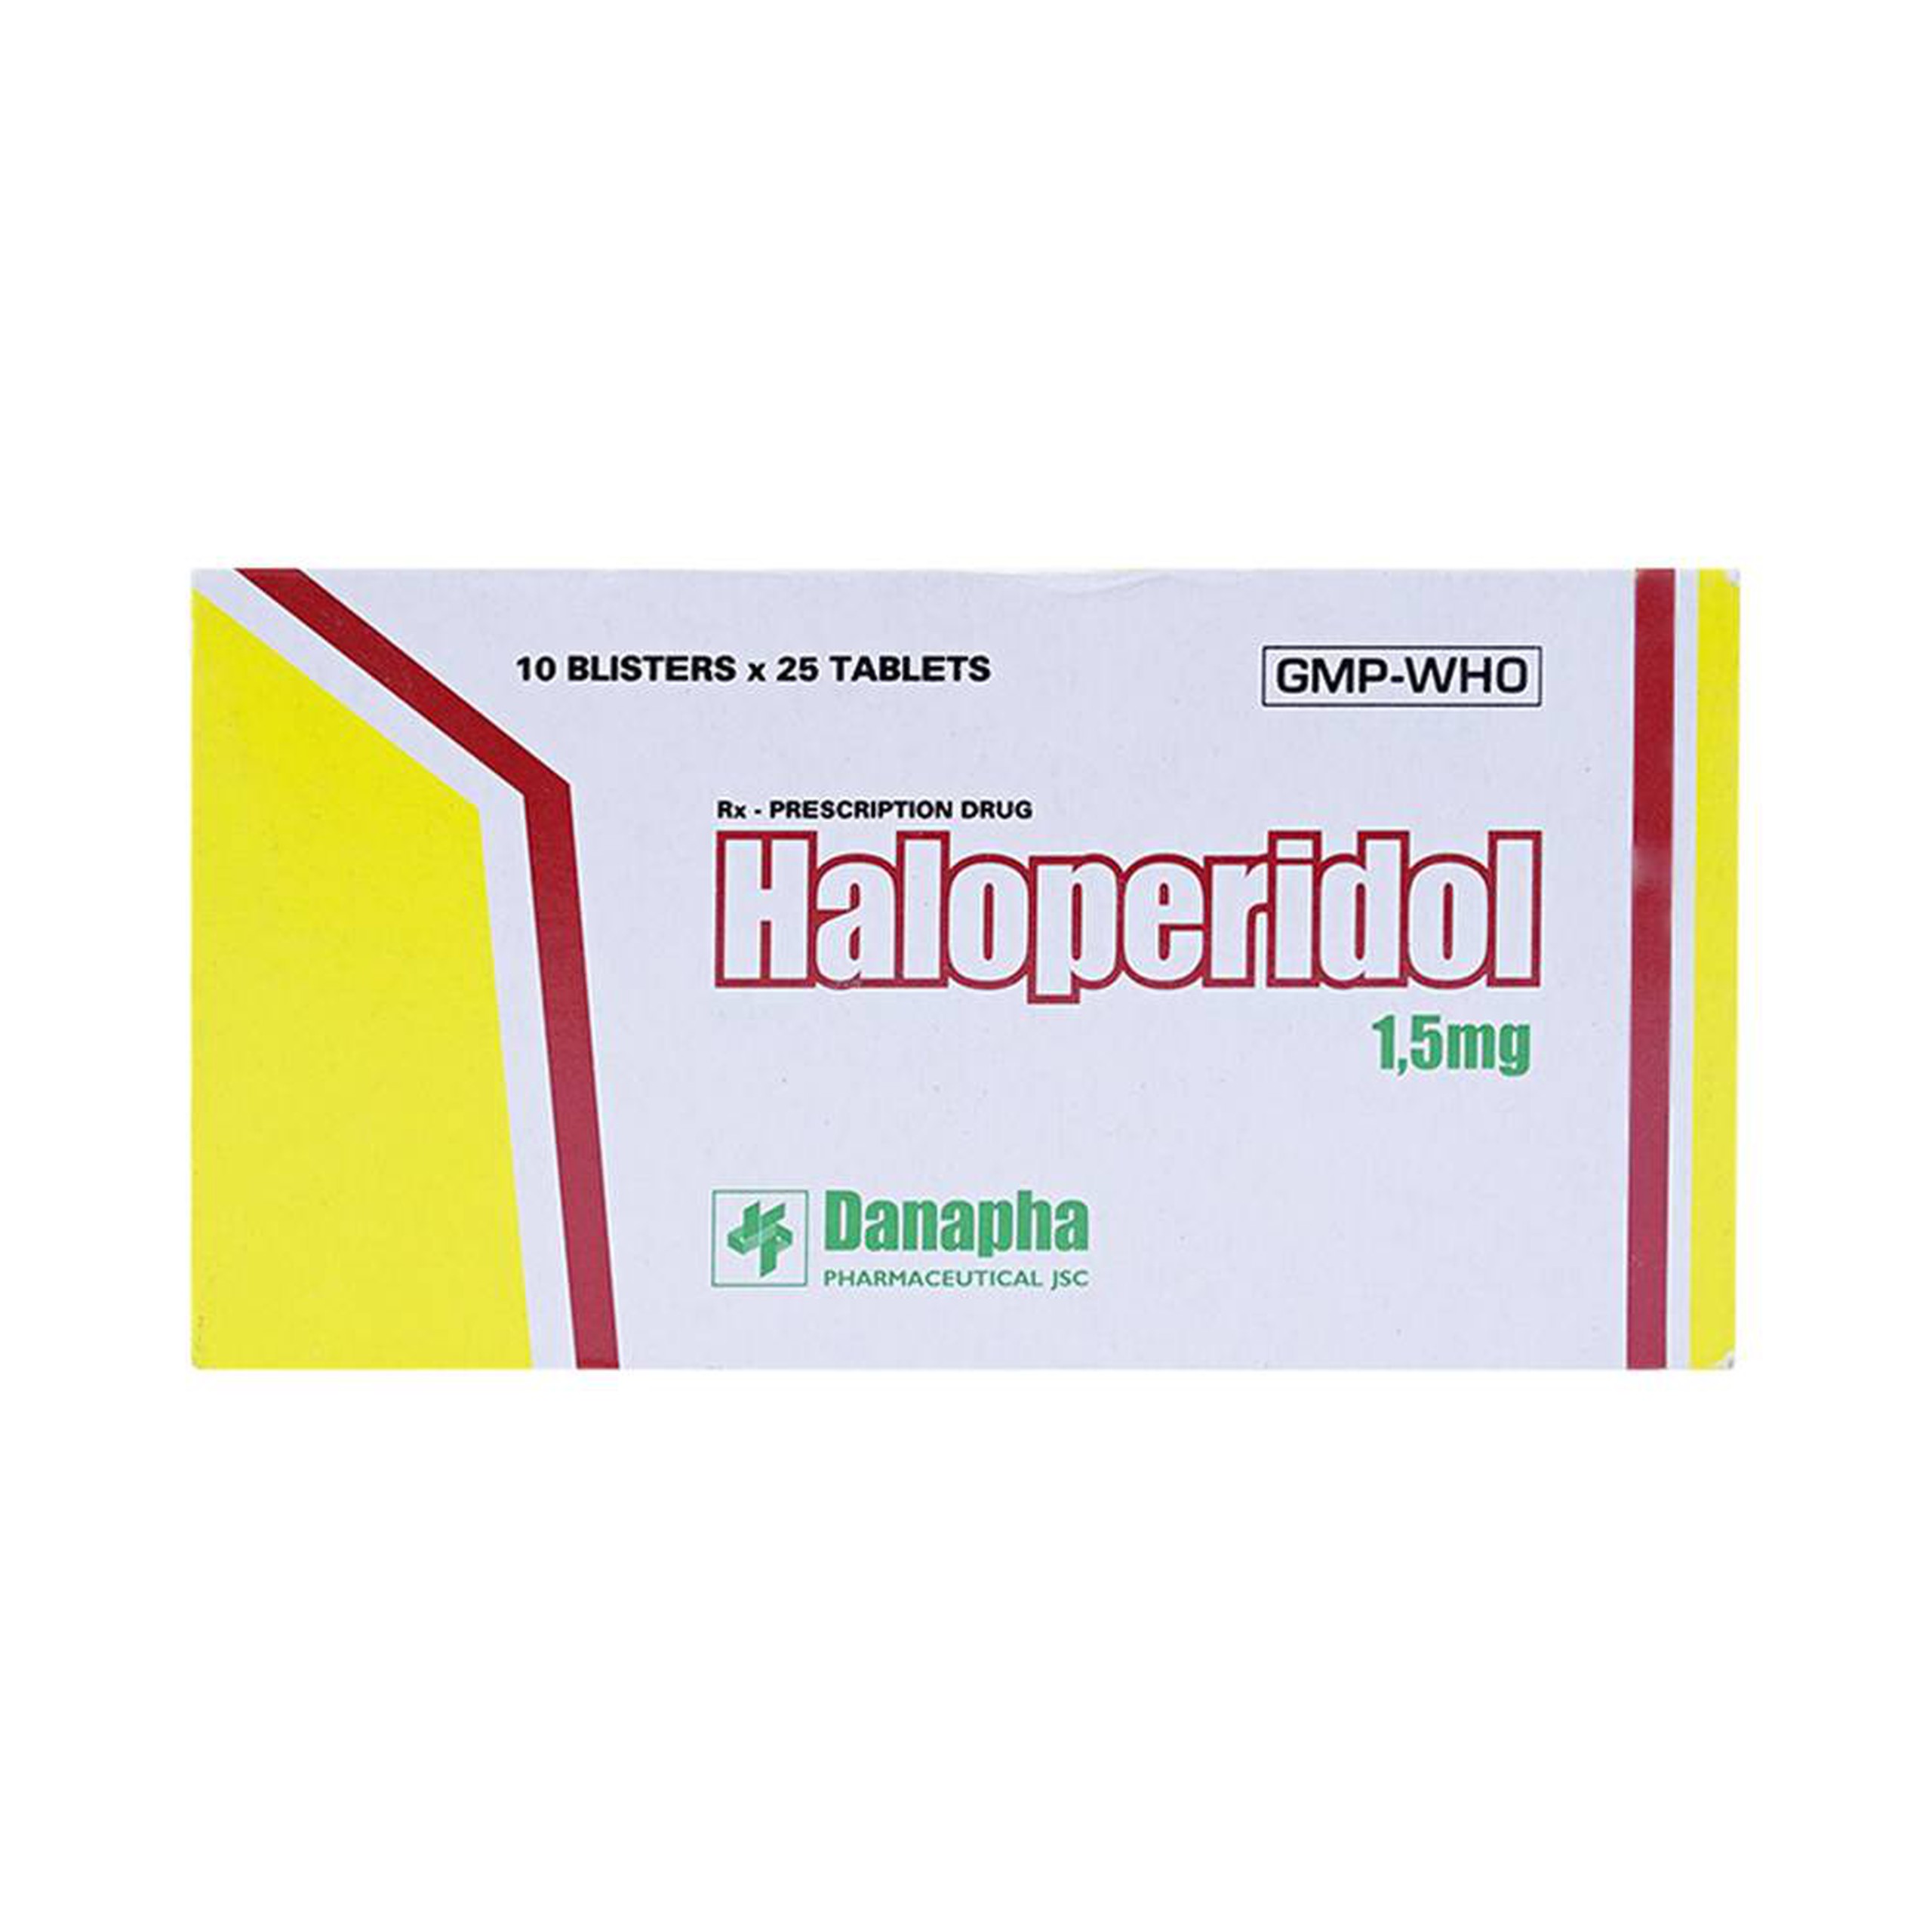 Thuốc Haloperidol 1.5mg Danapha điều trị các trạng thái kích động tâm thần, vận động (10 vỉ x 25 viên)